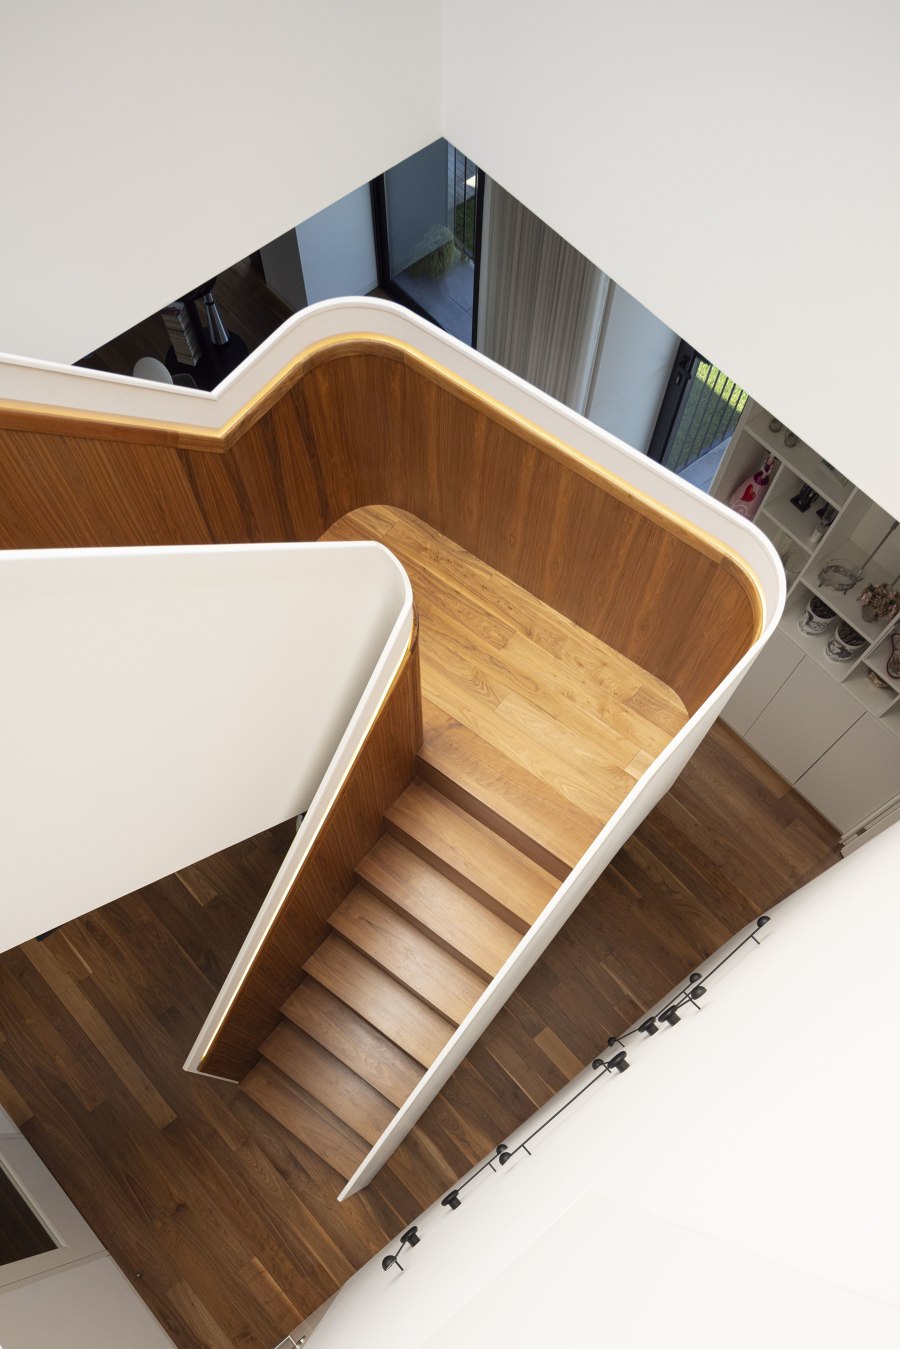 Casa PS di Inception Architects Studio | Case unifamiliari